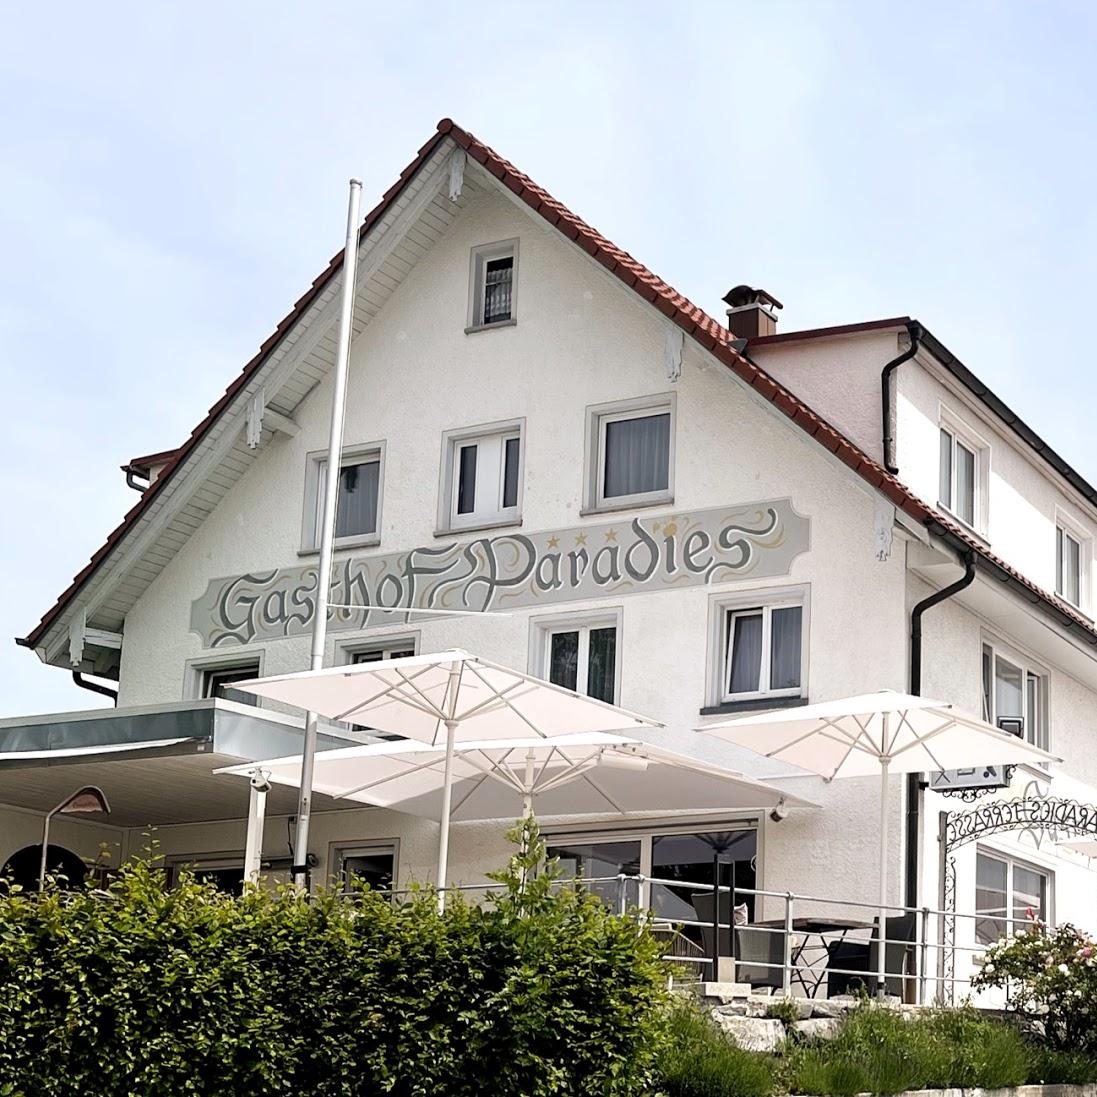 Restaurant "Hotel Gasthof Paradies I Ihr Paradies in" in Vogt